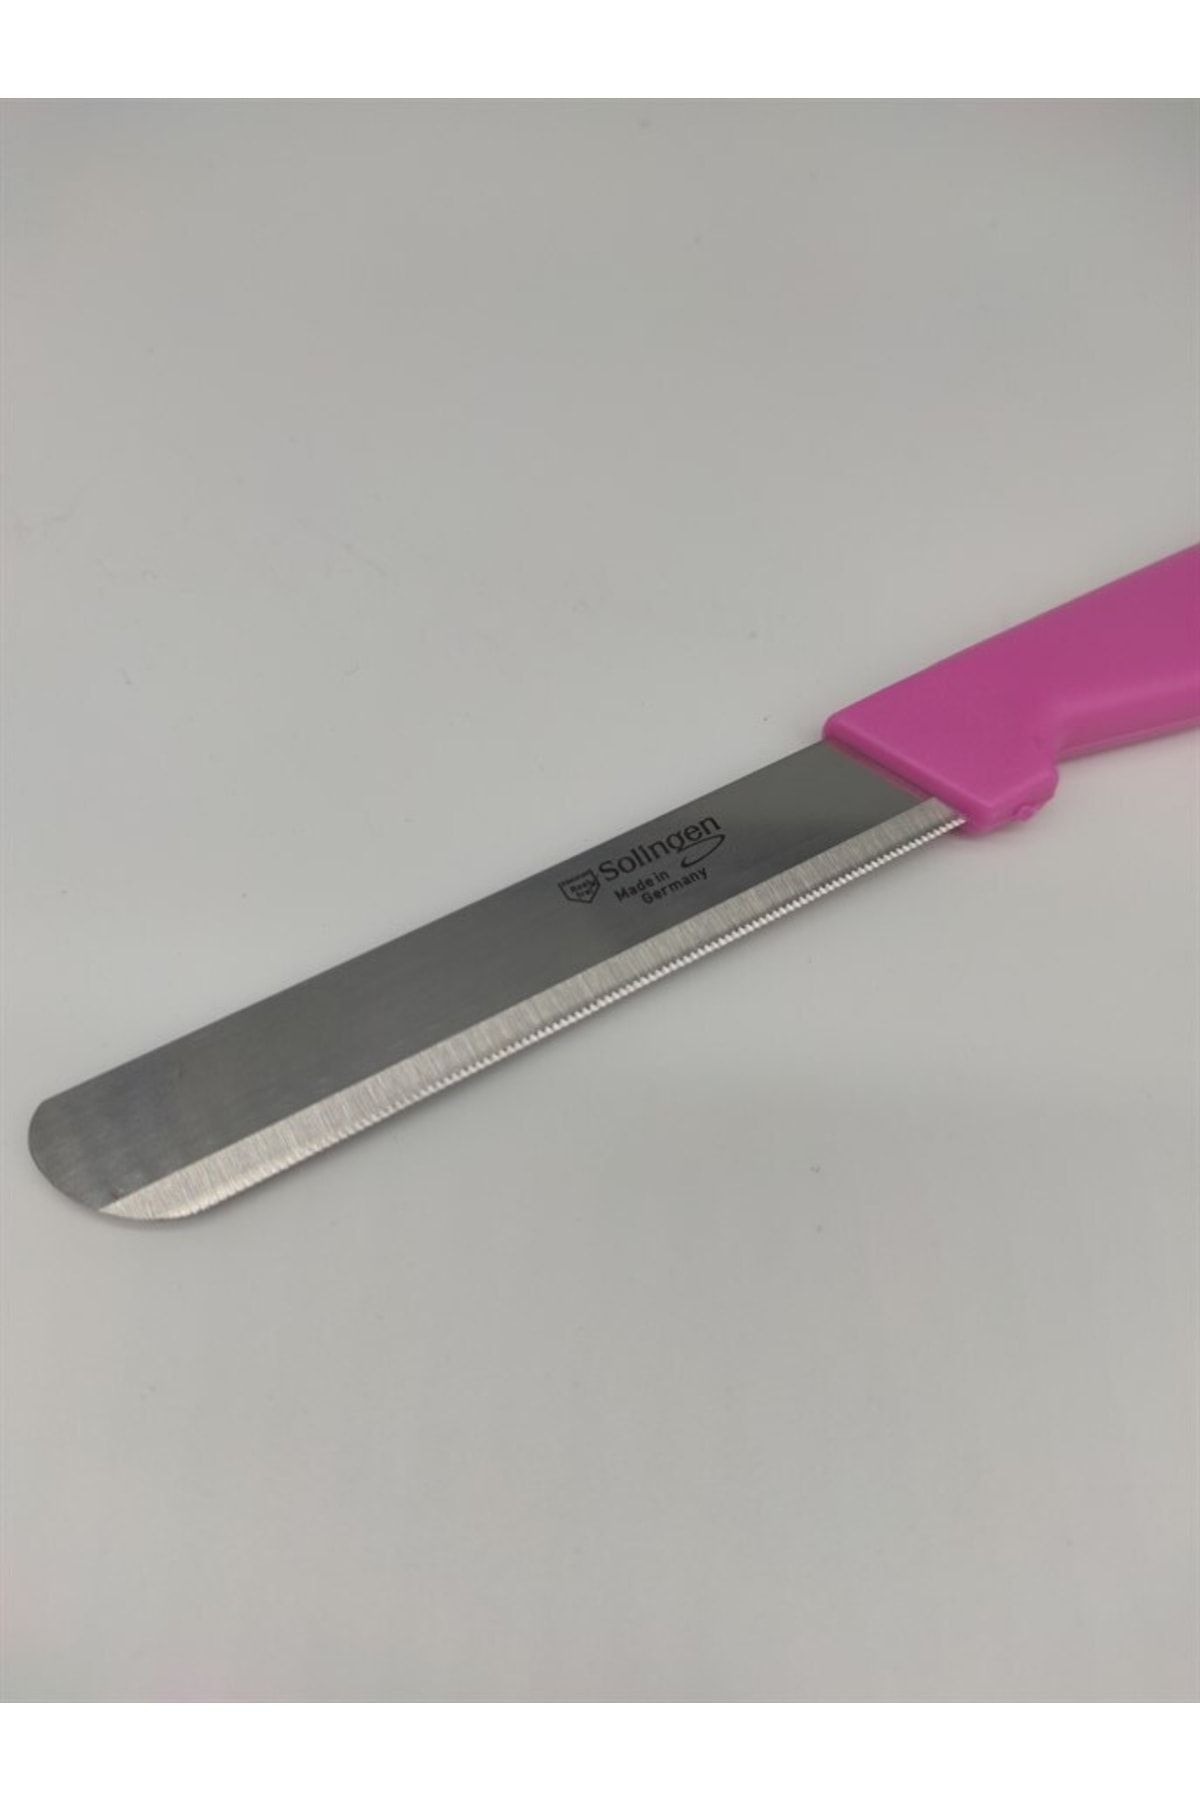 Solingen Pembe Renkli Doğrama Bıçağı Mutfak Bıçağı Et Ekmek Meyve Sebze Şef Bıçağı Paslanmaz Çelik